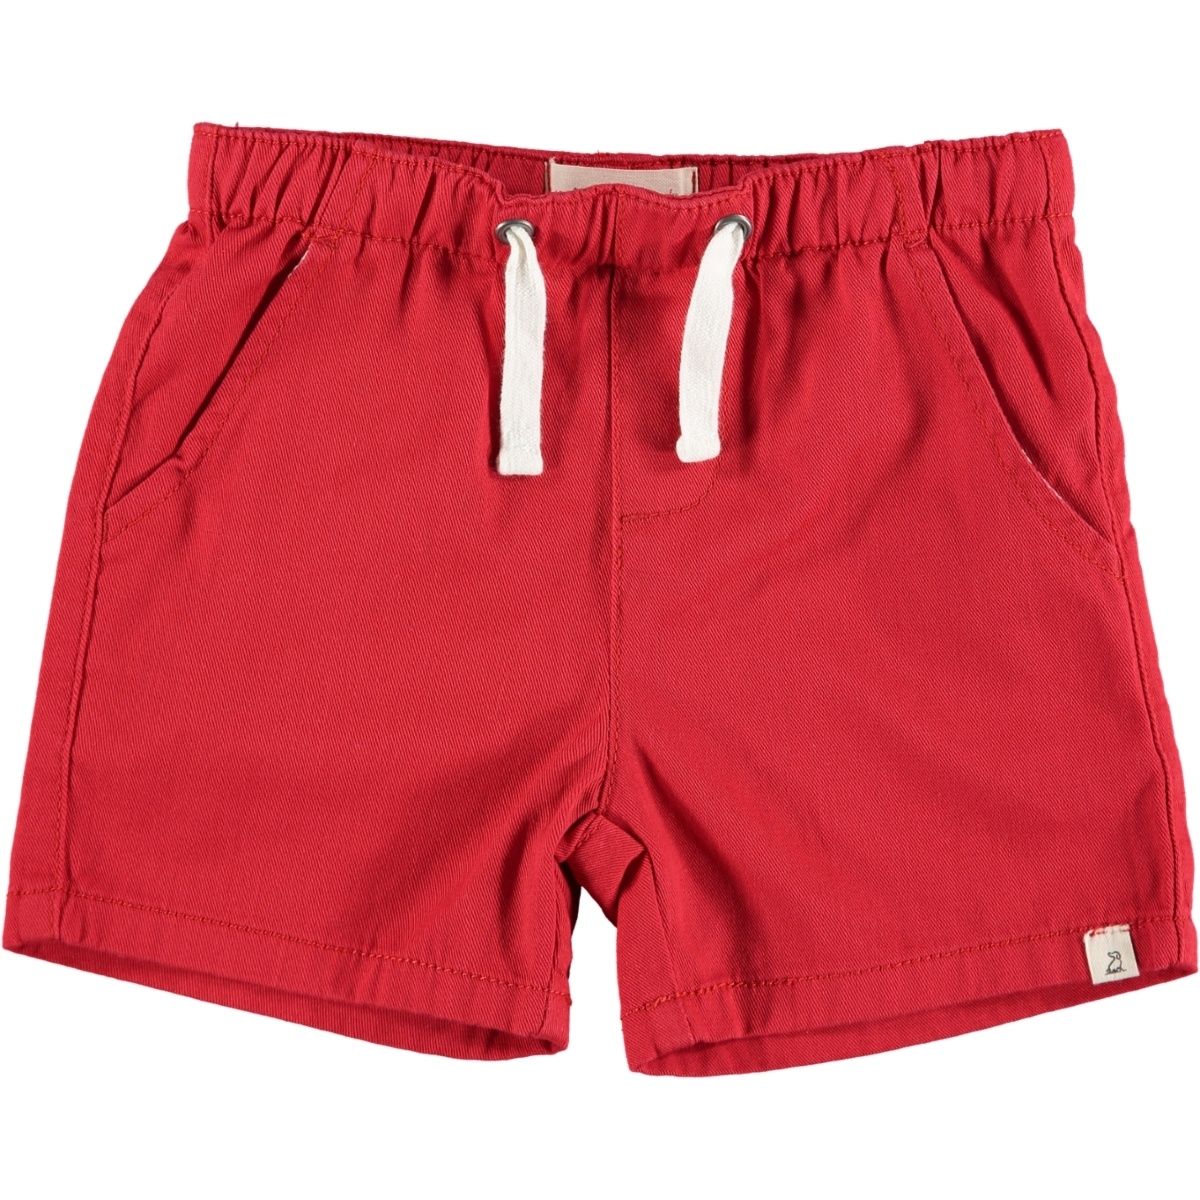 Firetruck Red Boy Shorts